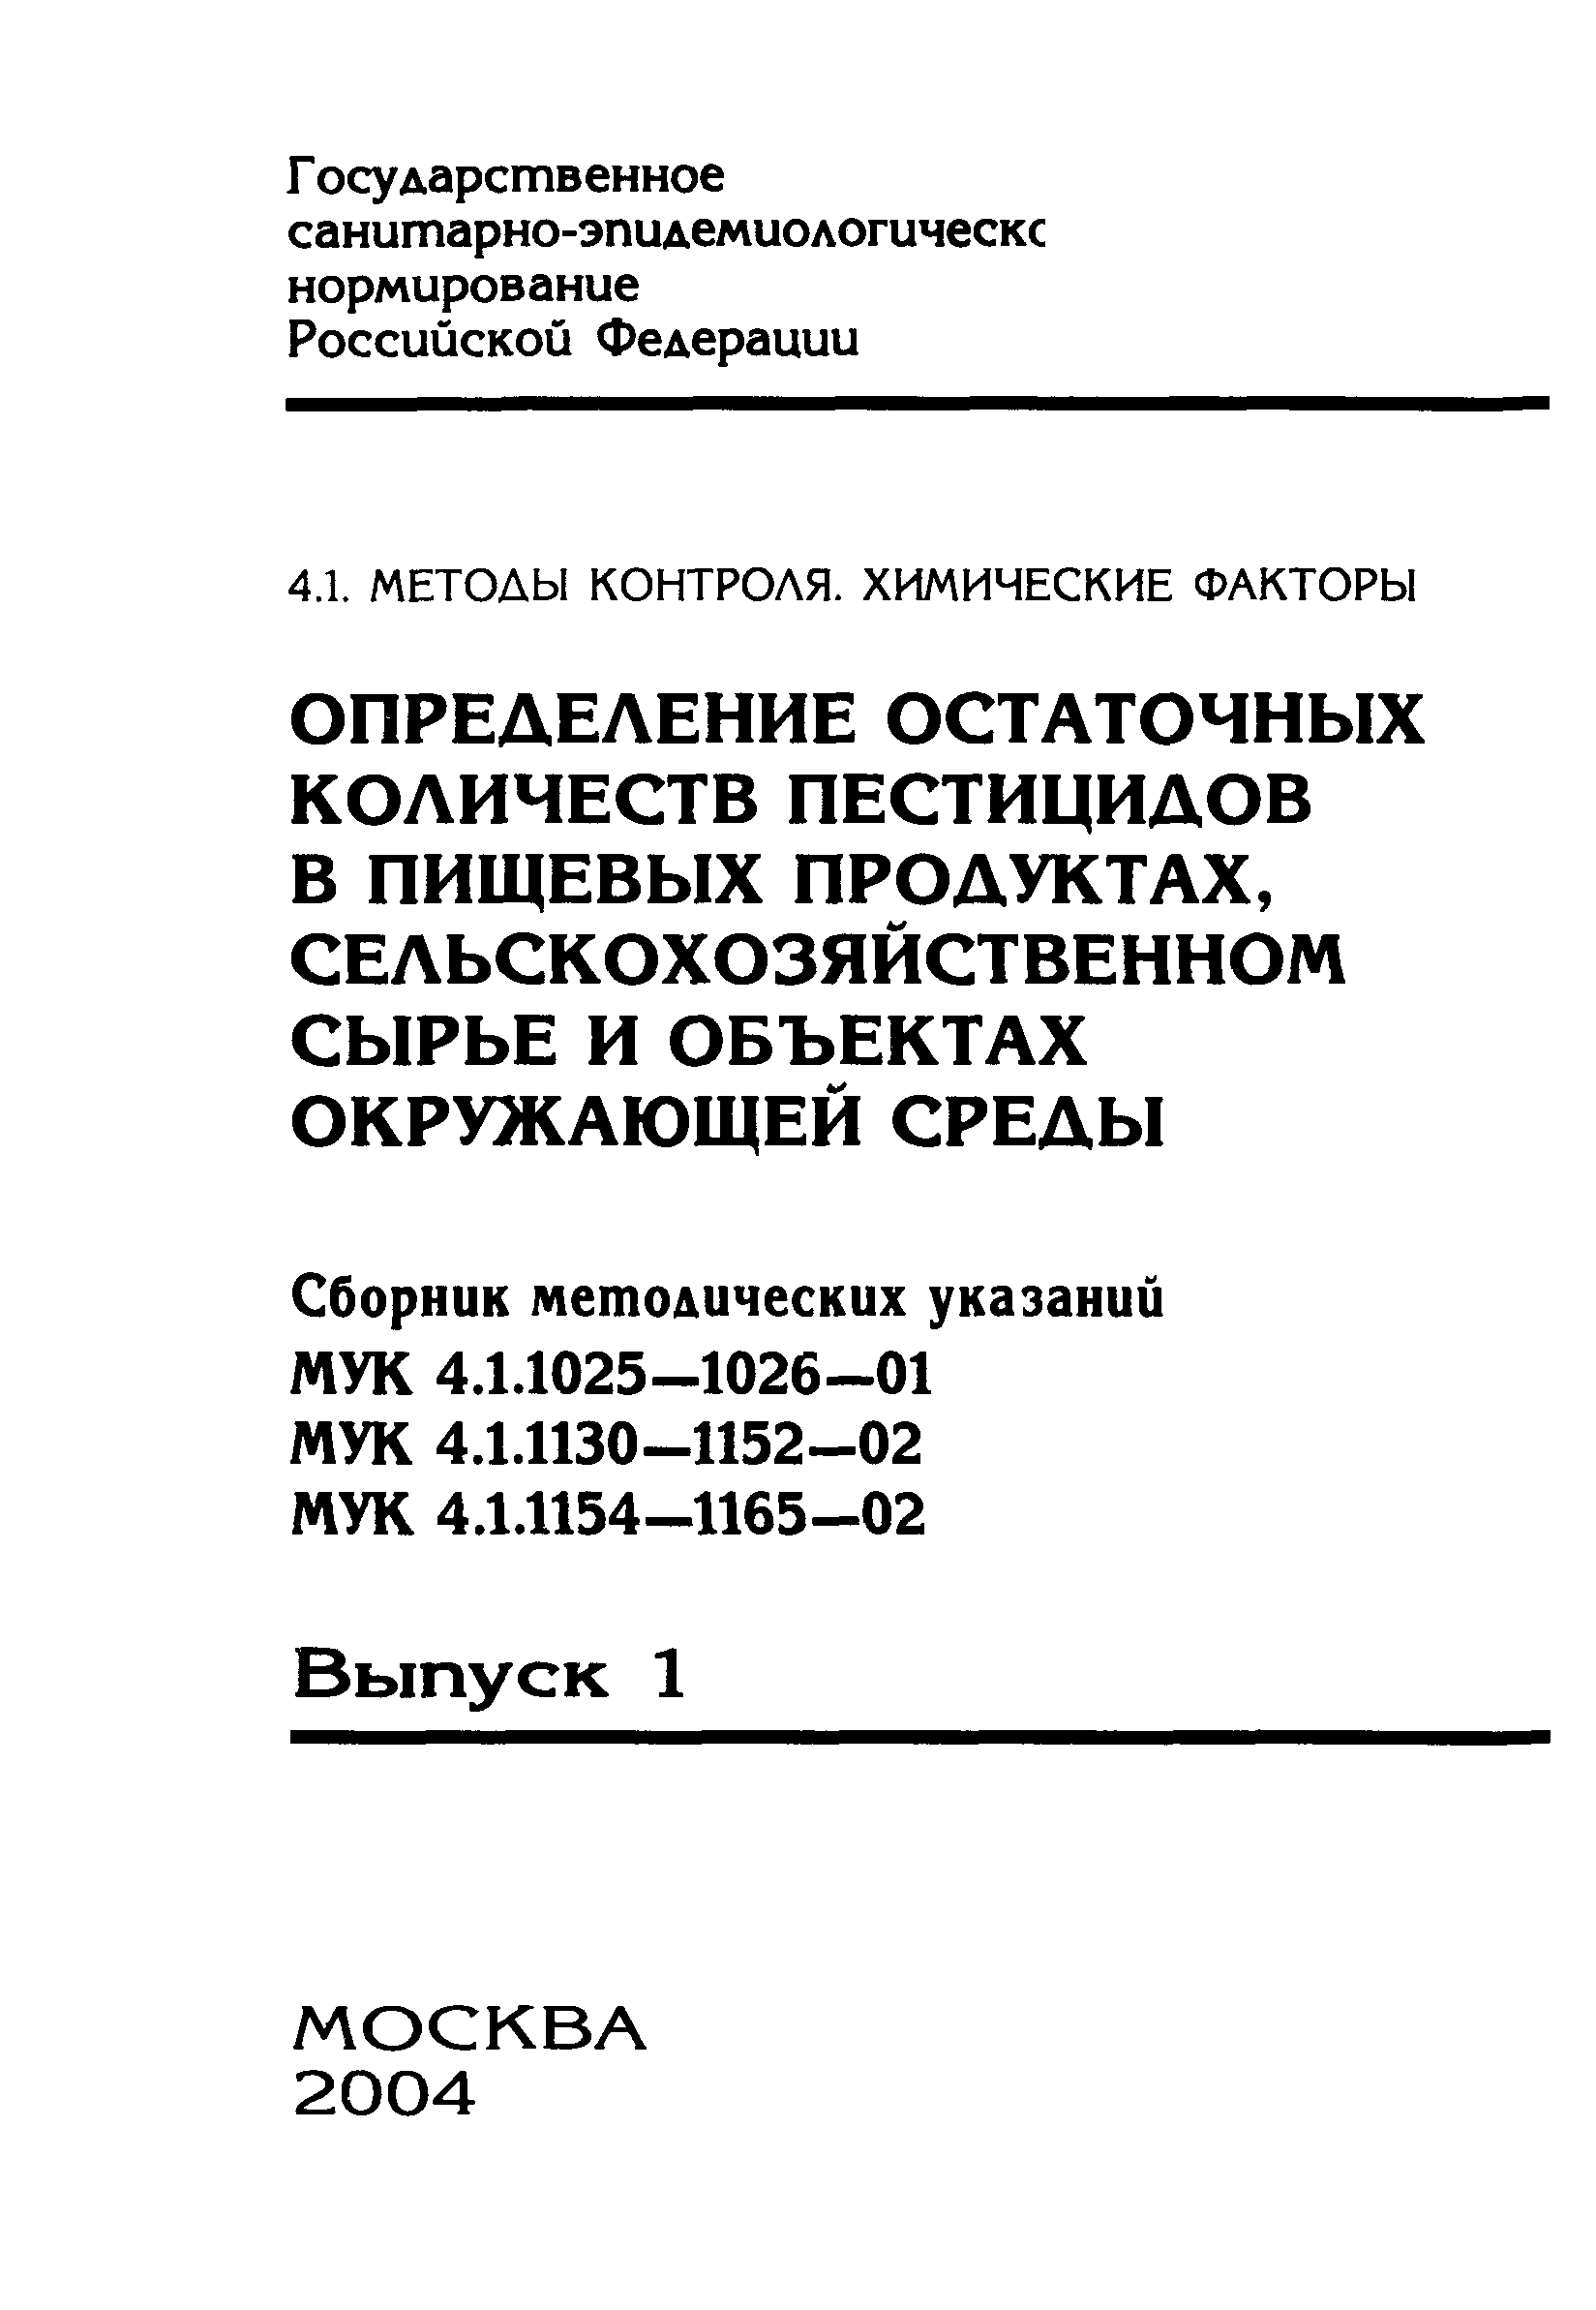 МУК 4.1.1145-03